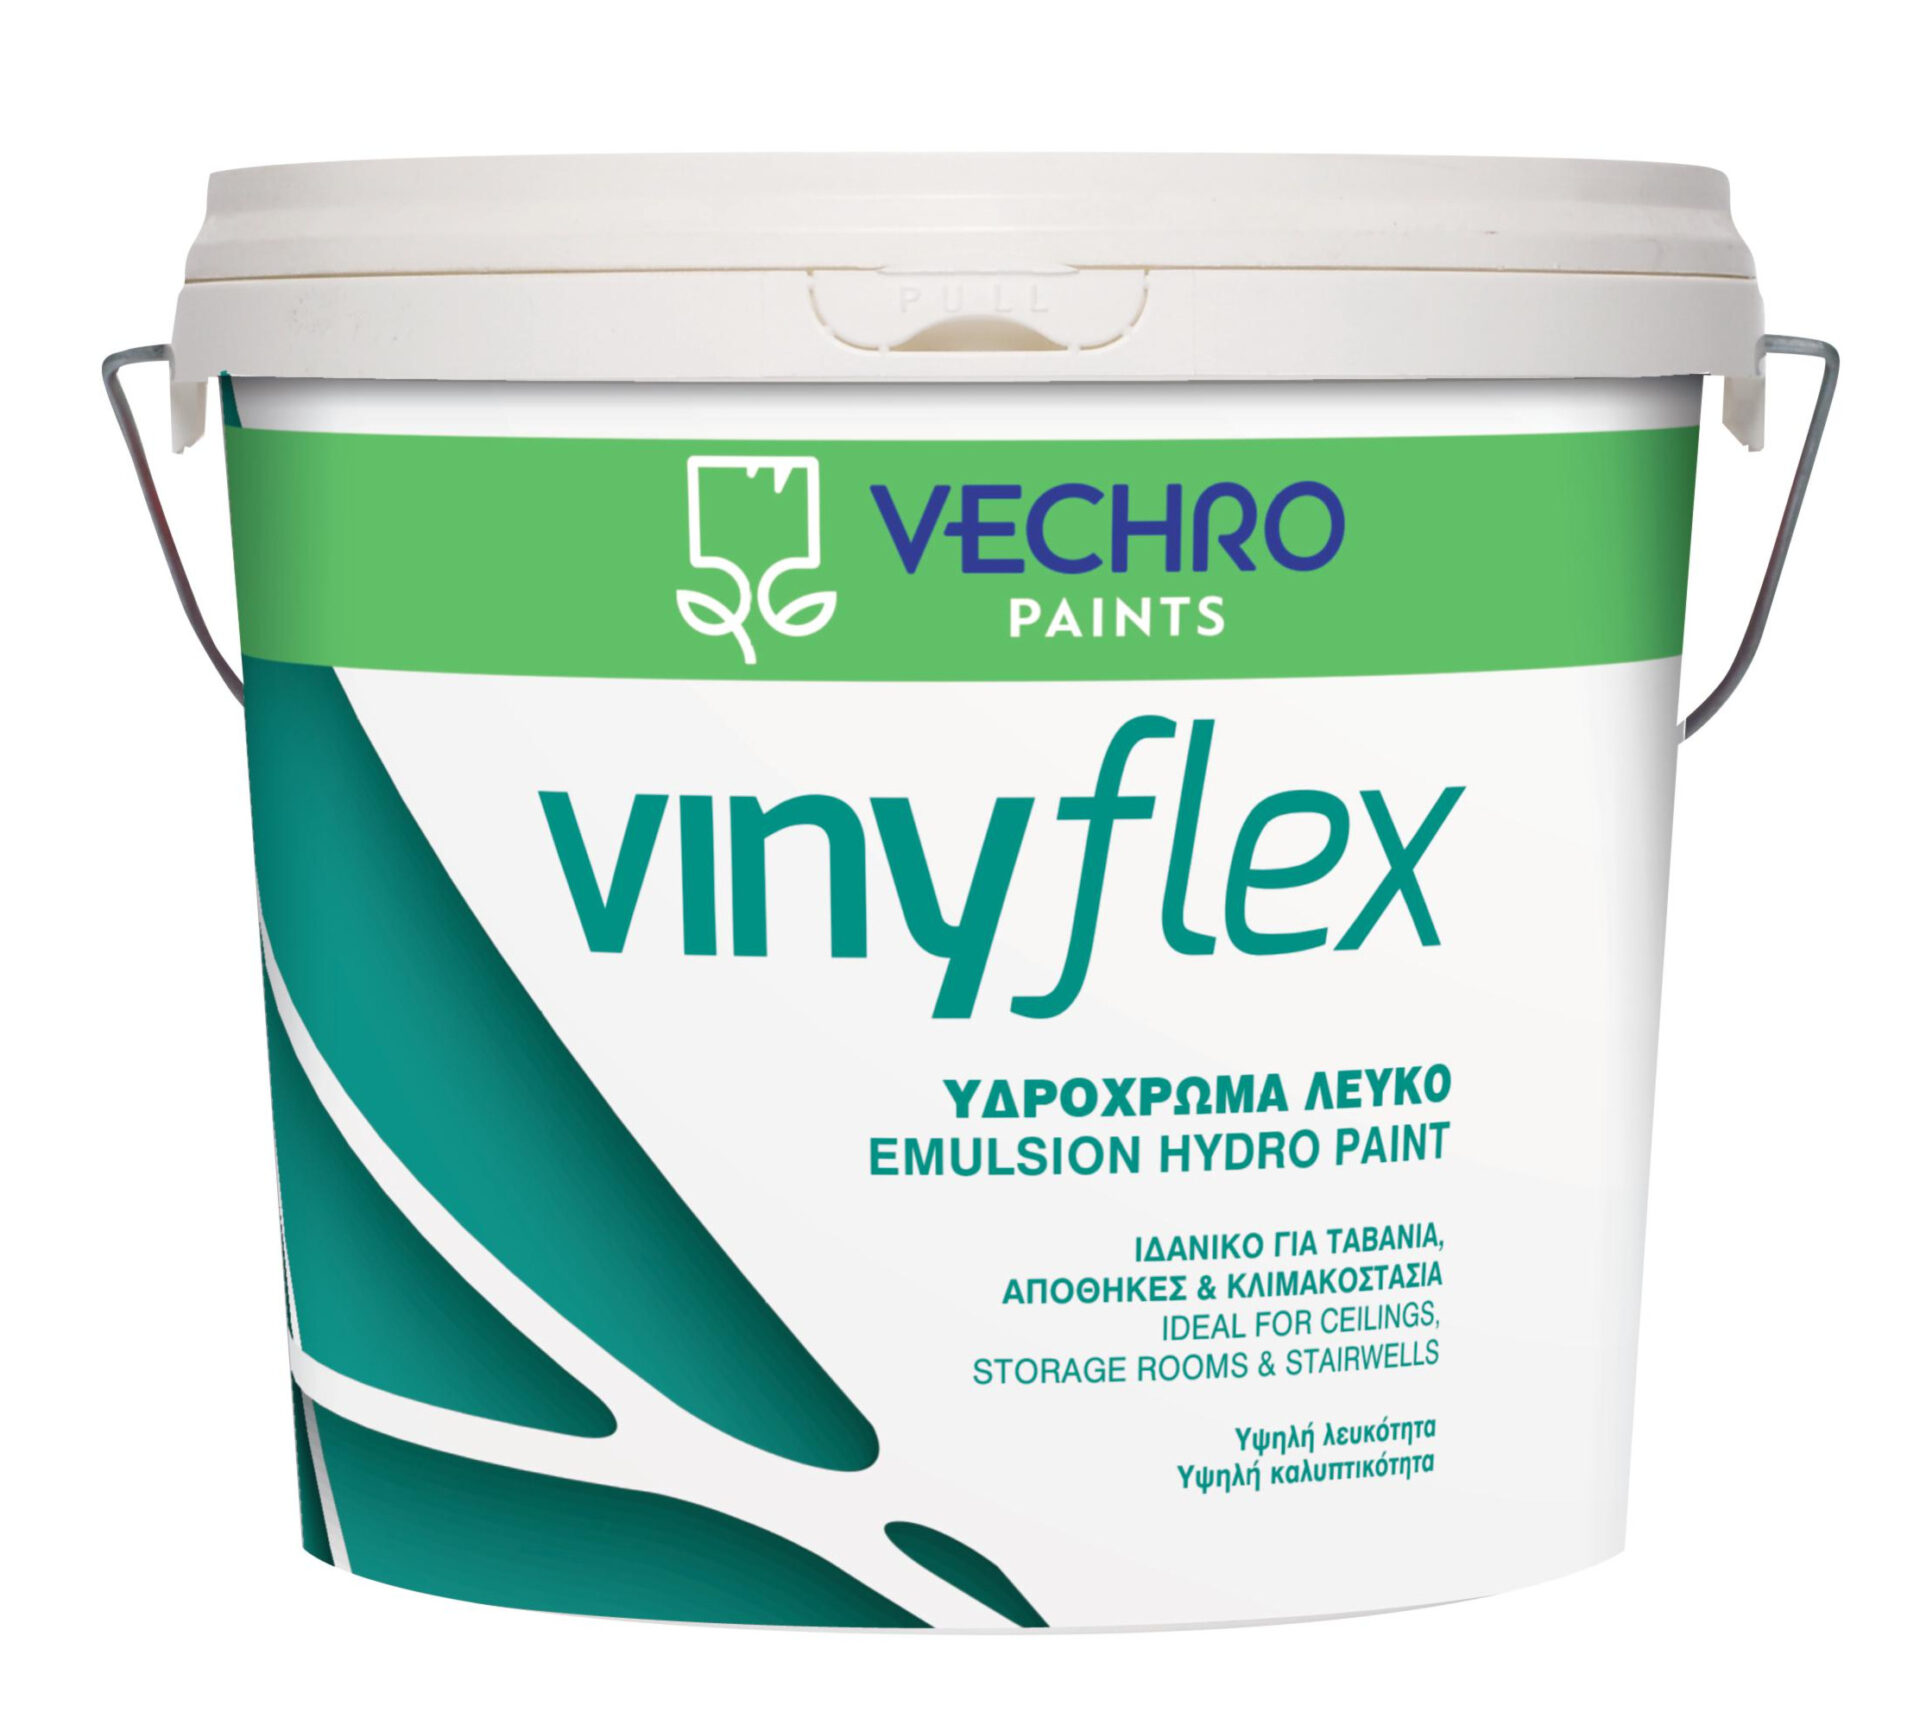 Υδρόχρωμα Vinyflex Vechro